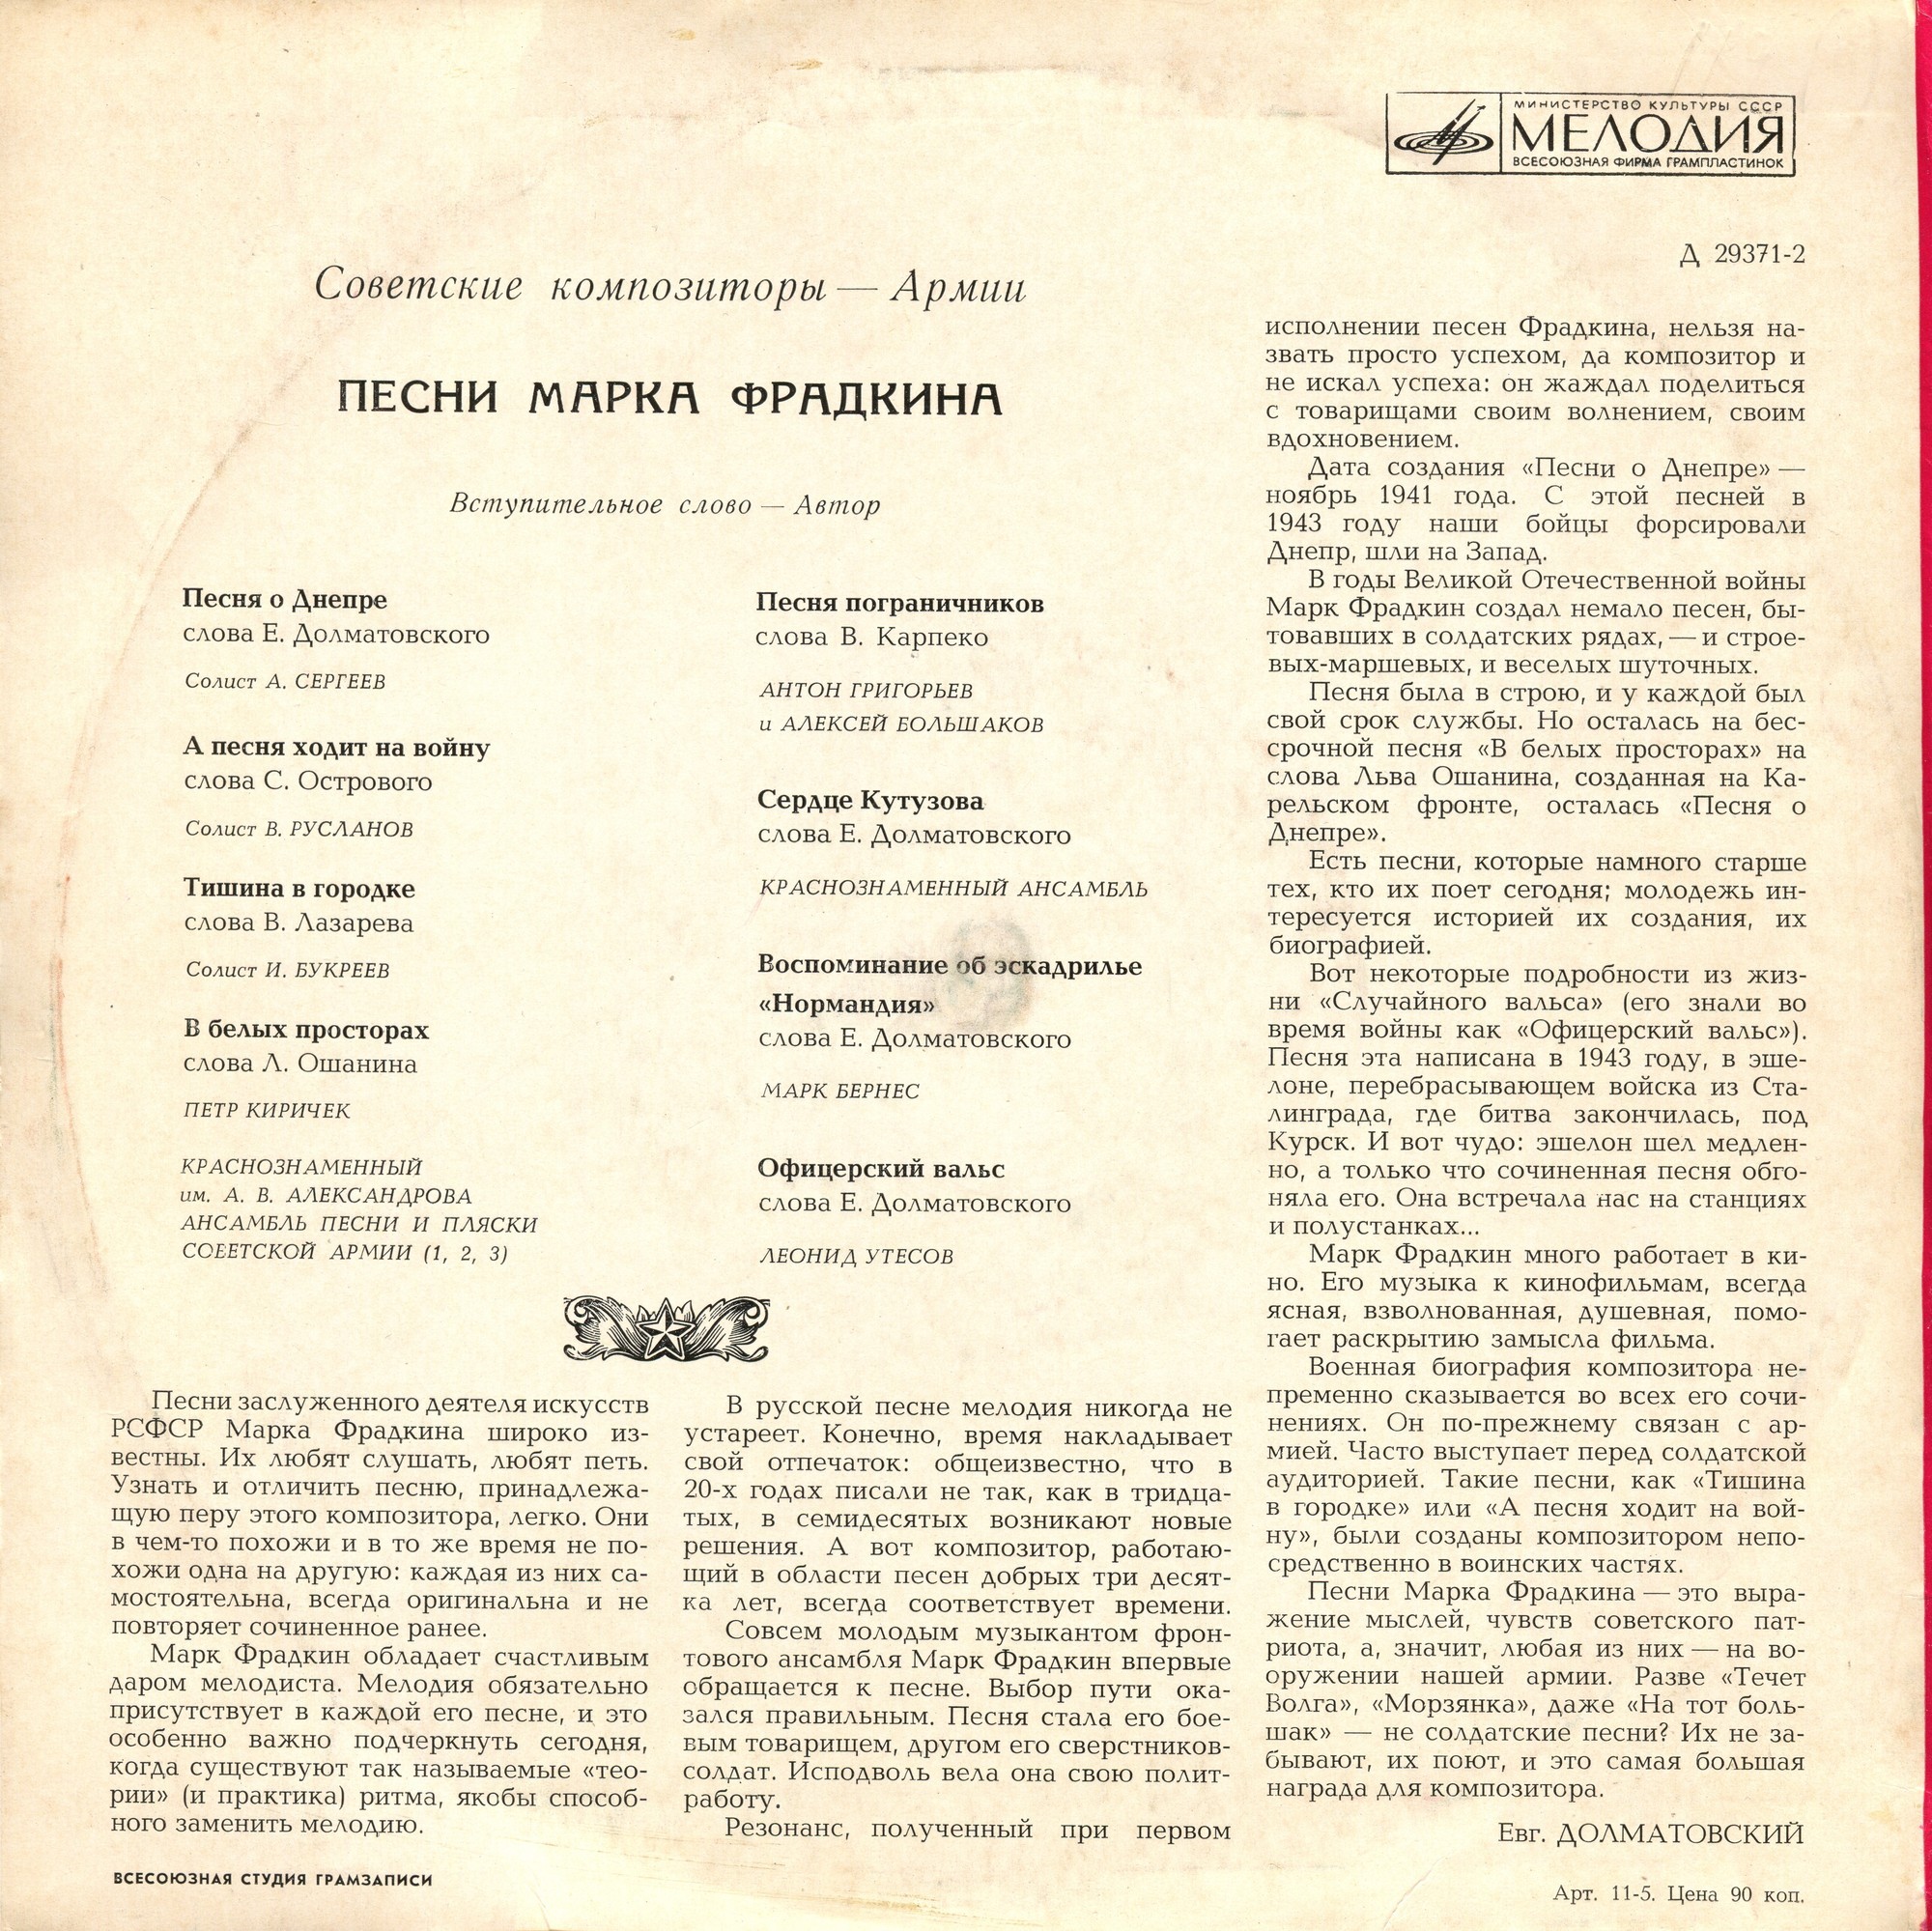 Песни М.Г. ФРАДКИНА. Из цикла «Советские композиторы – Армии»